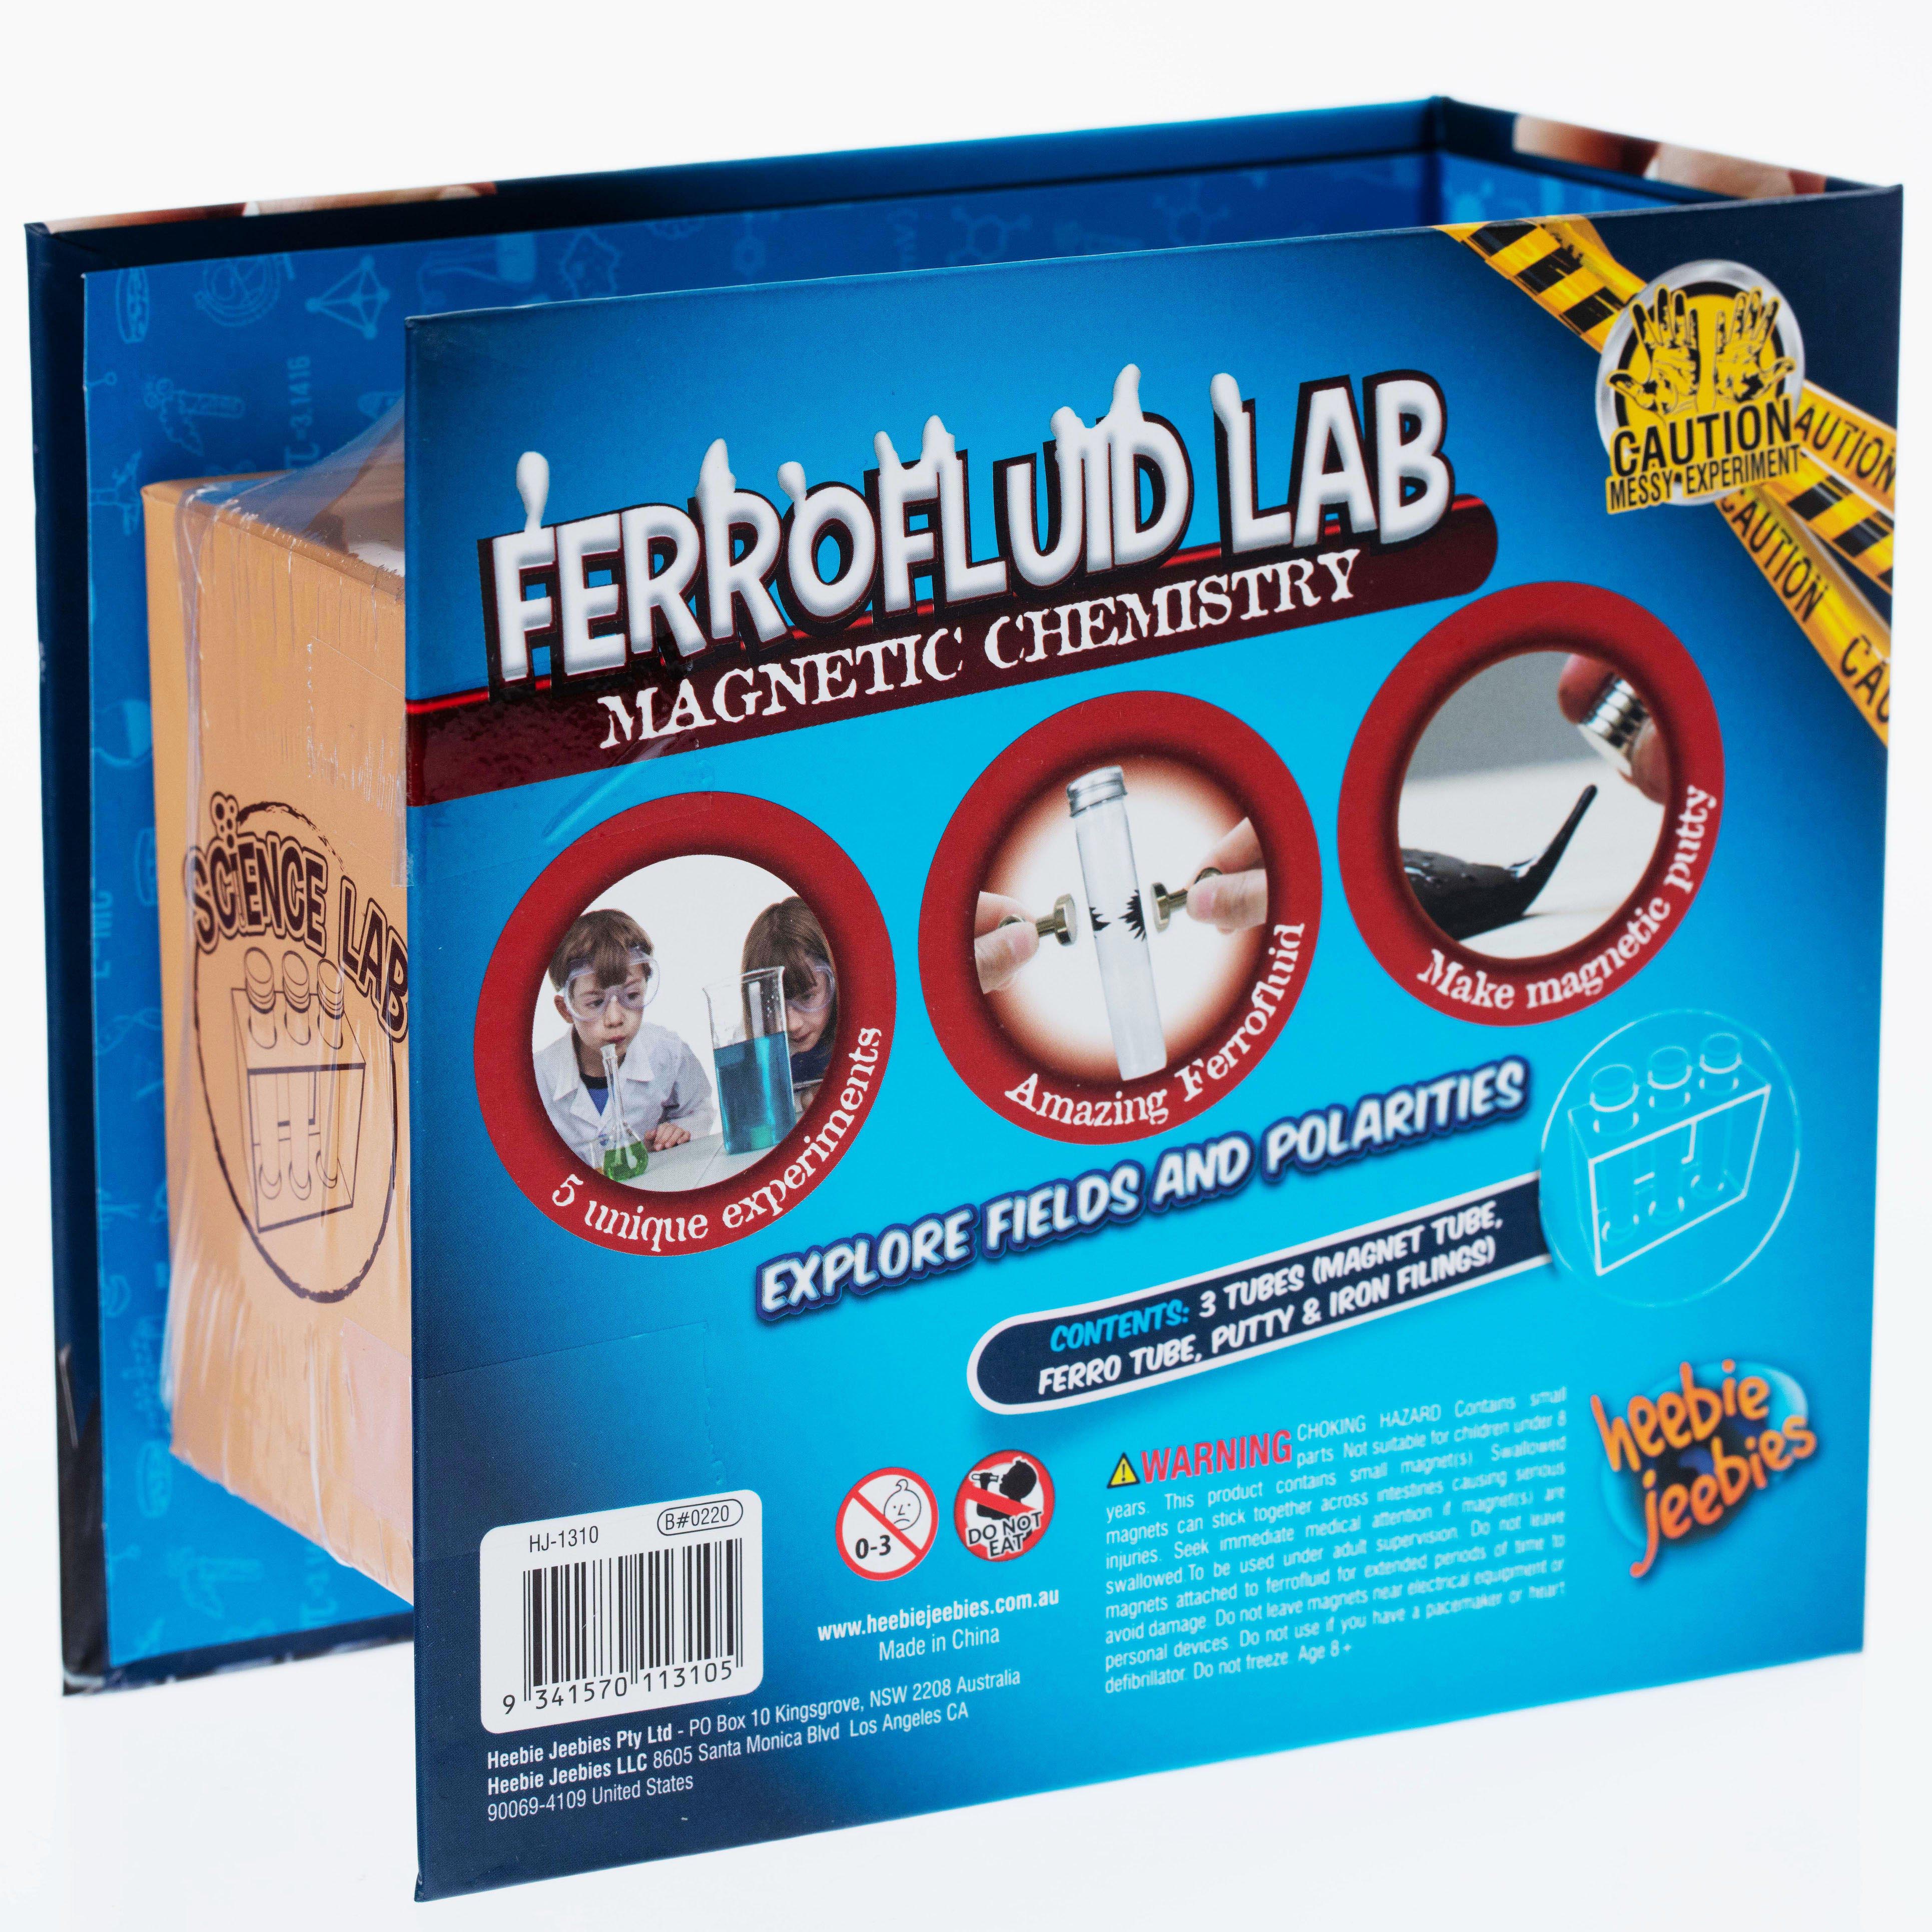 FerrofluidLabTestTubes2.jpg